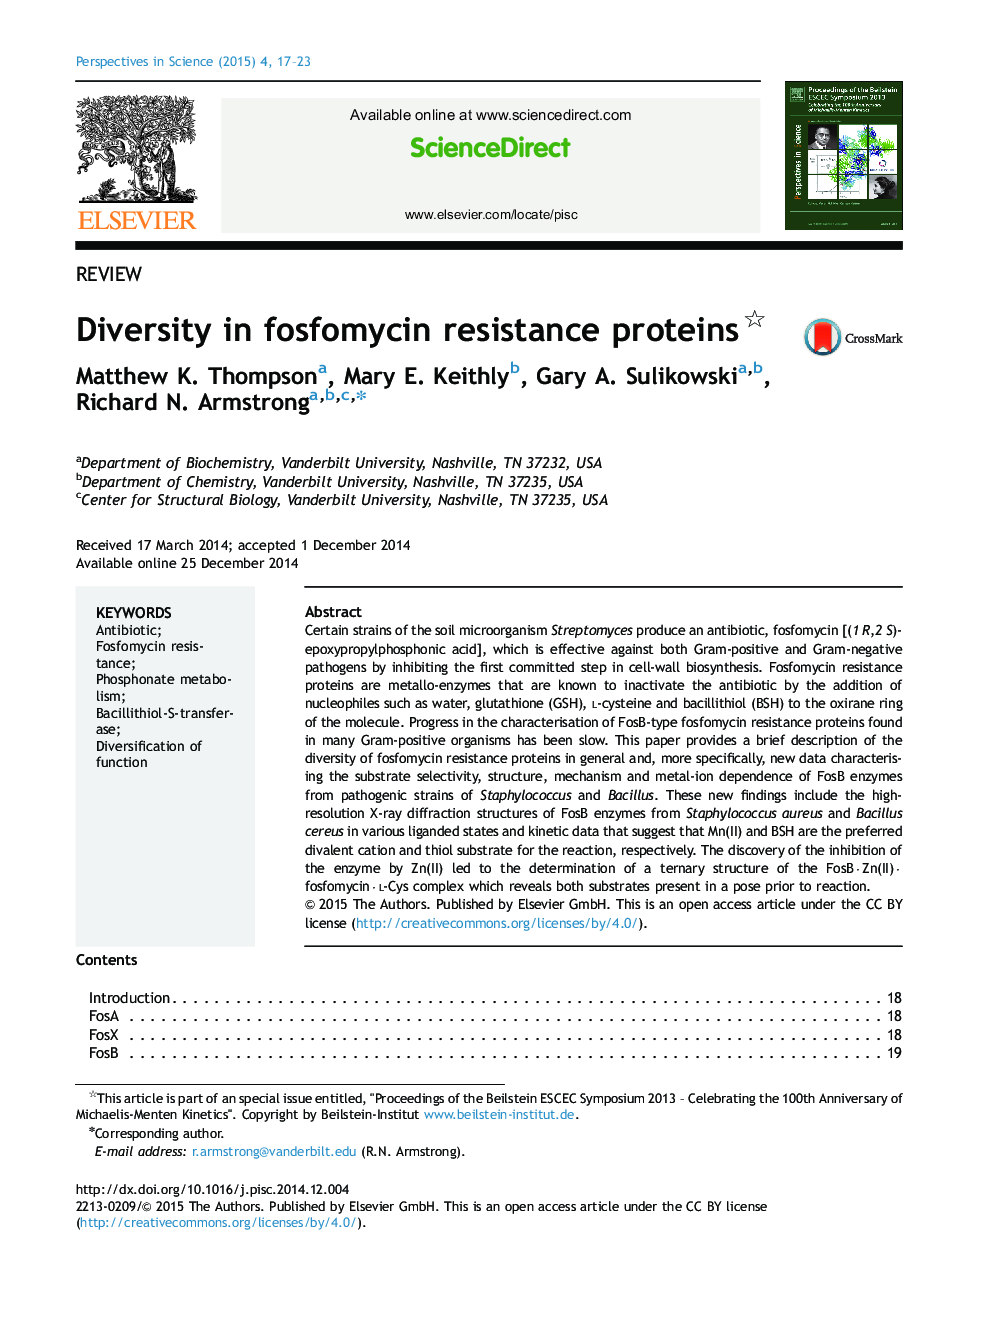 تنوع در پروتئین های مقاوم به فسفومایسین؟ 